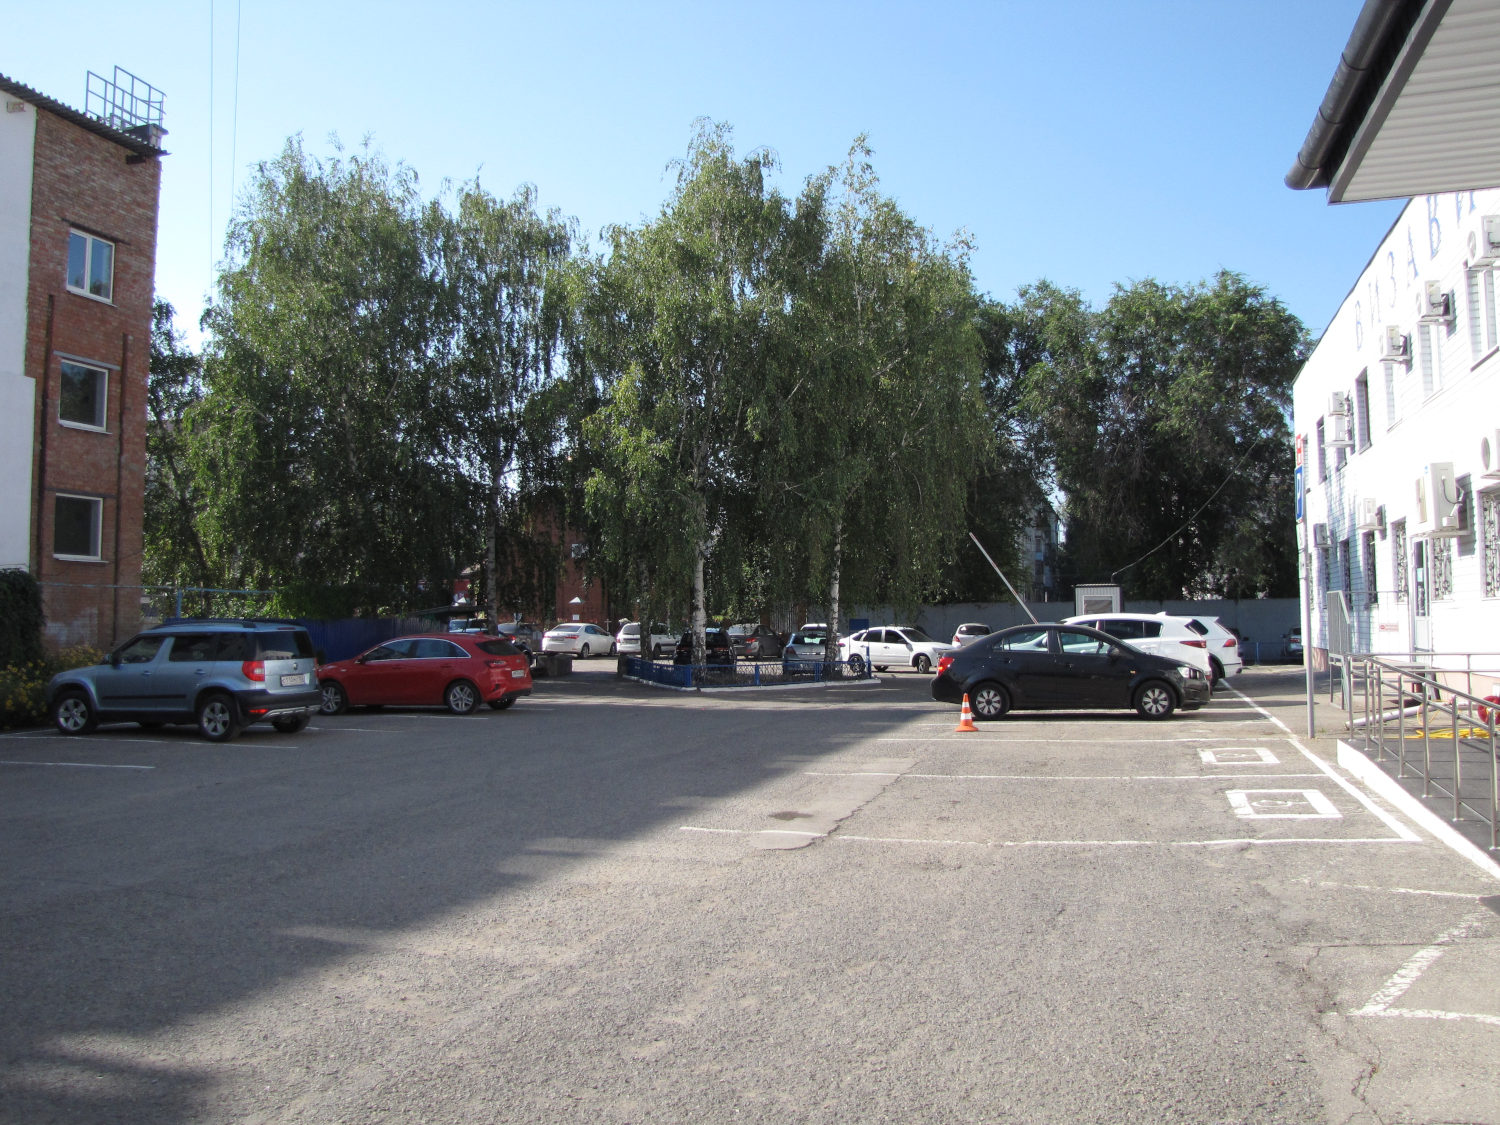  Автомобильная парковка возле здания Гепатолог в Тольятти